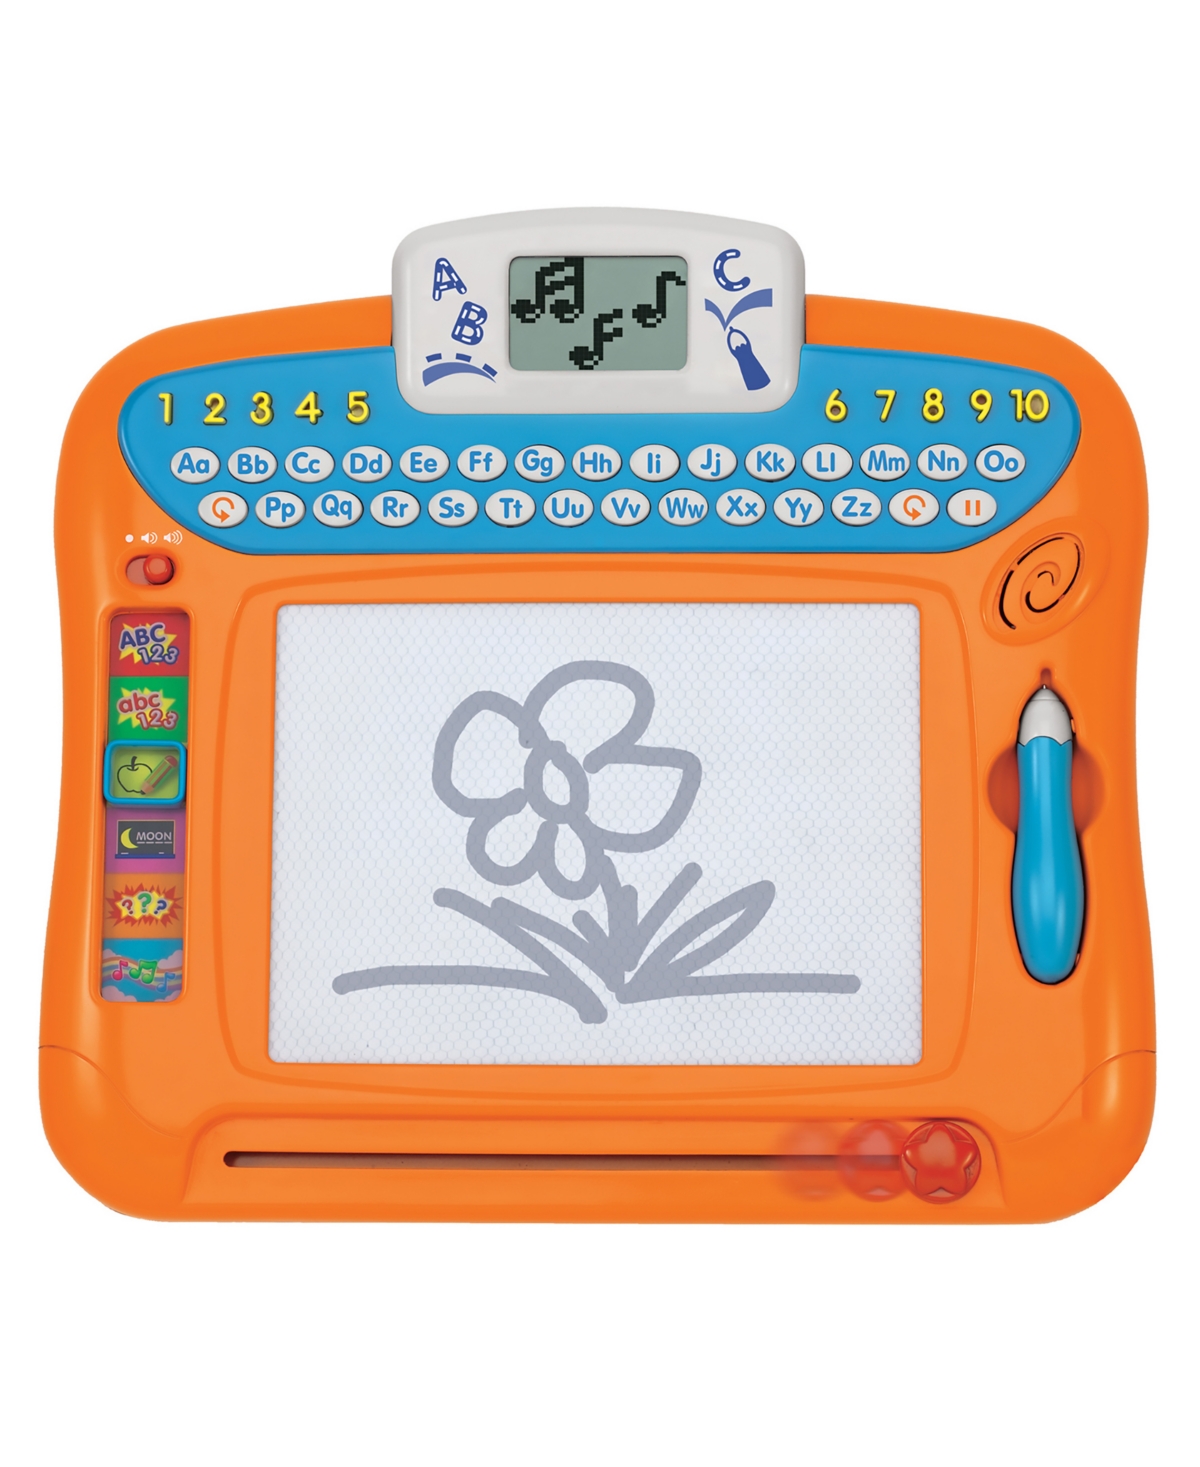 Winfun Write N Draw Learning Board In Orange